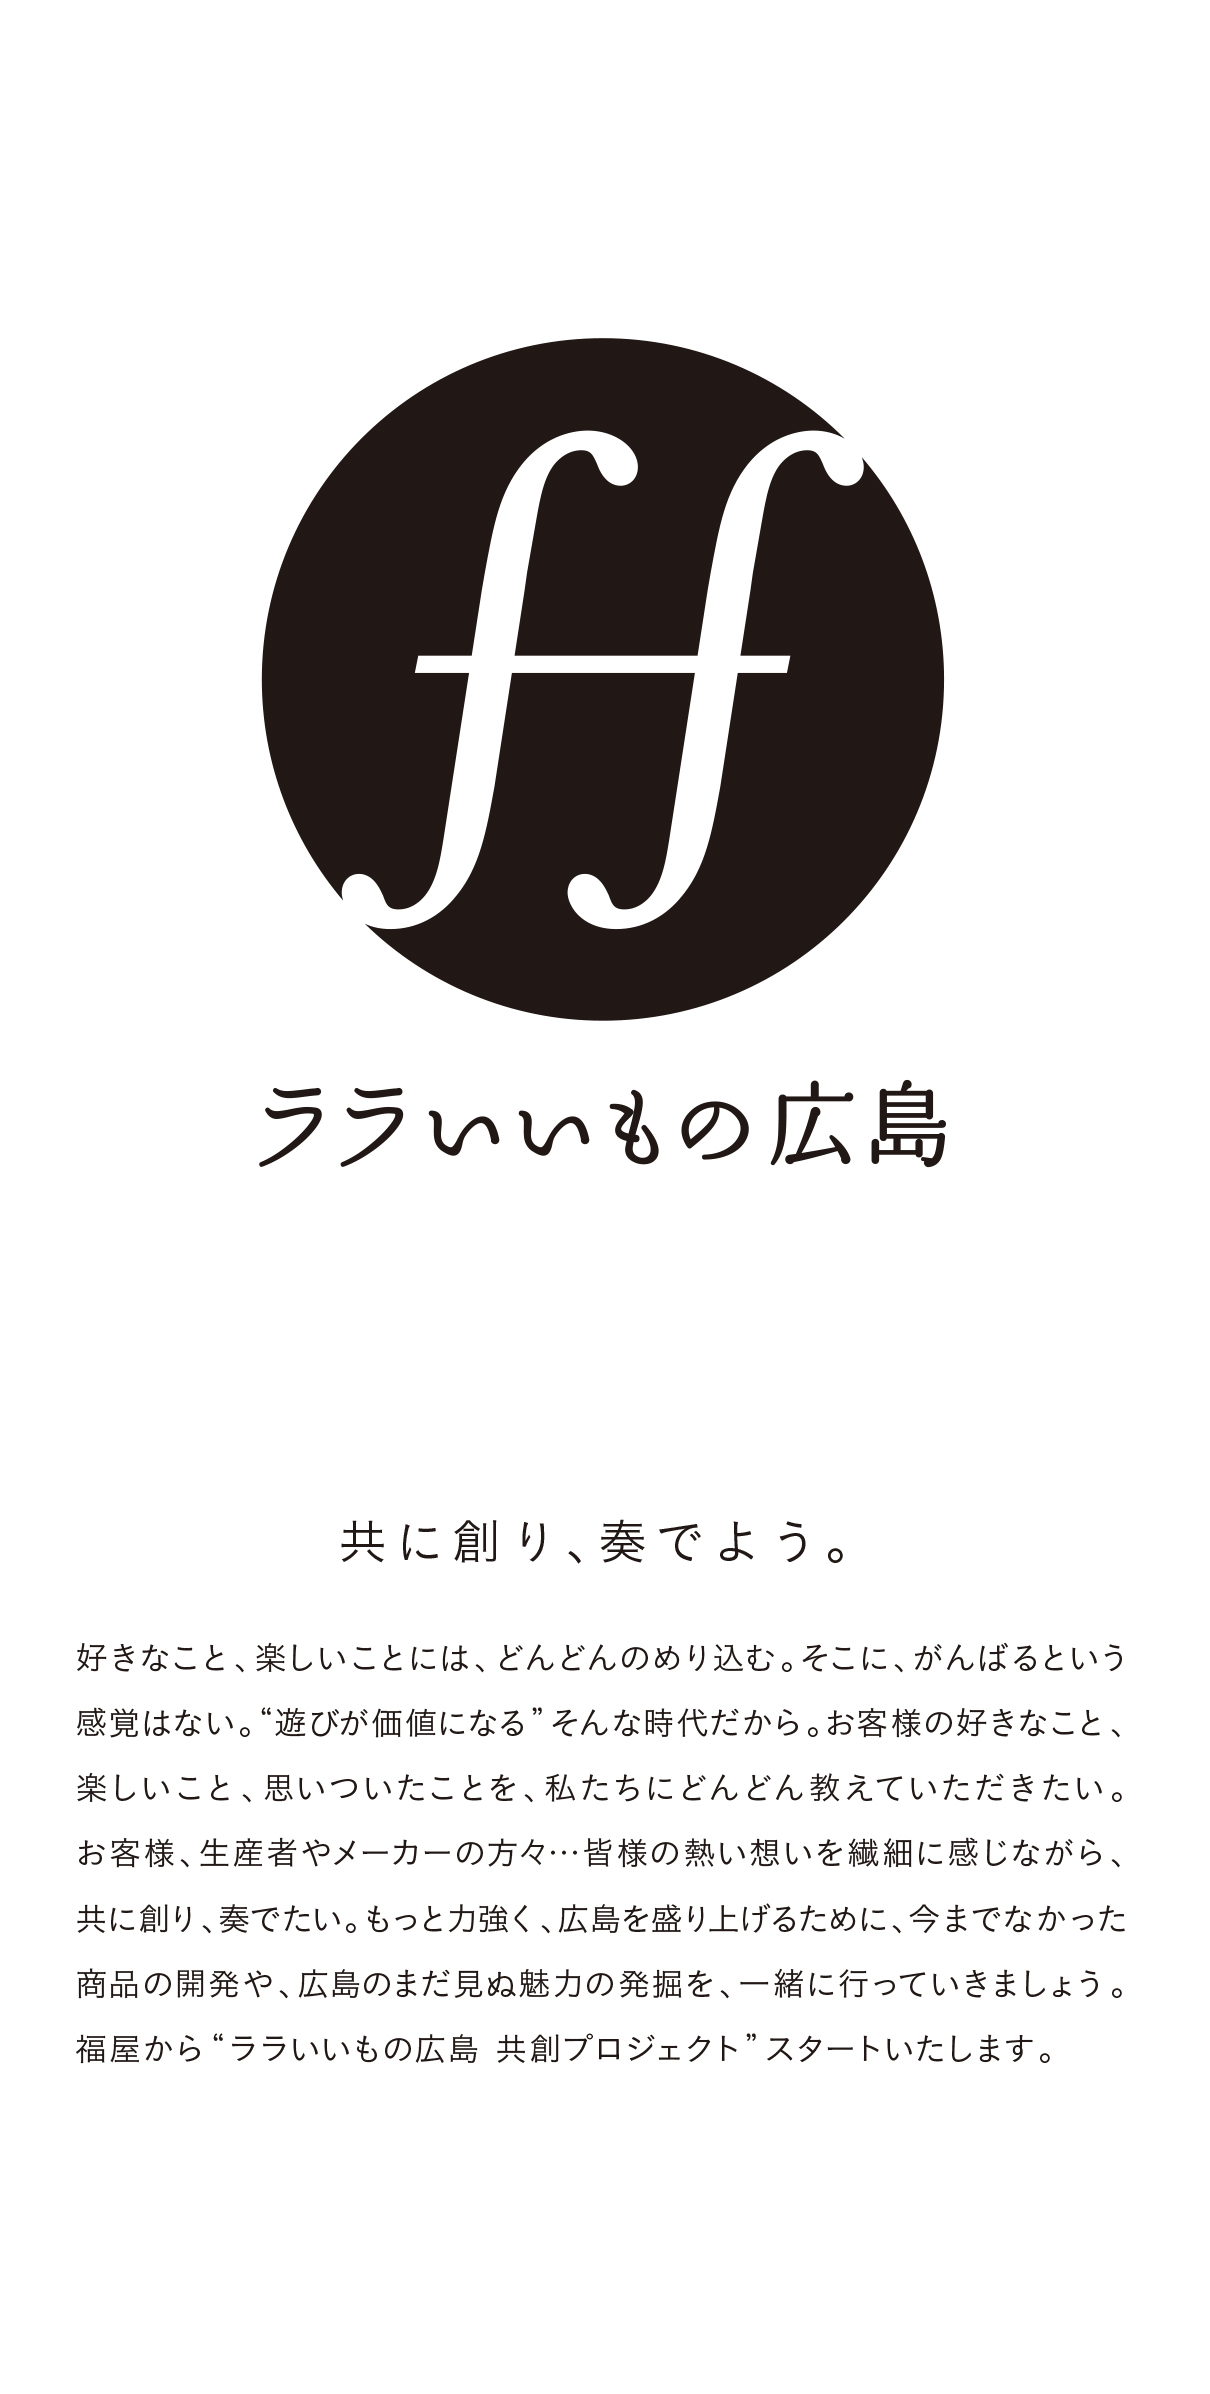 福屋 共創プロジェクト「ララいいもの広島」ロゴ、ステートメント1